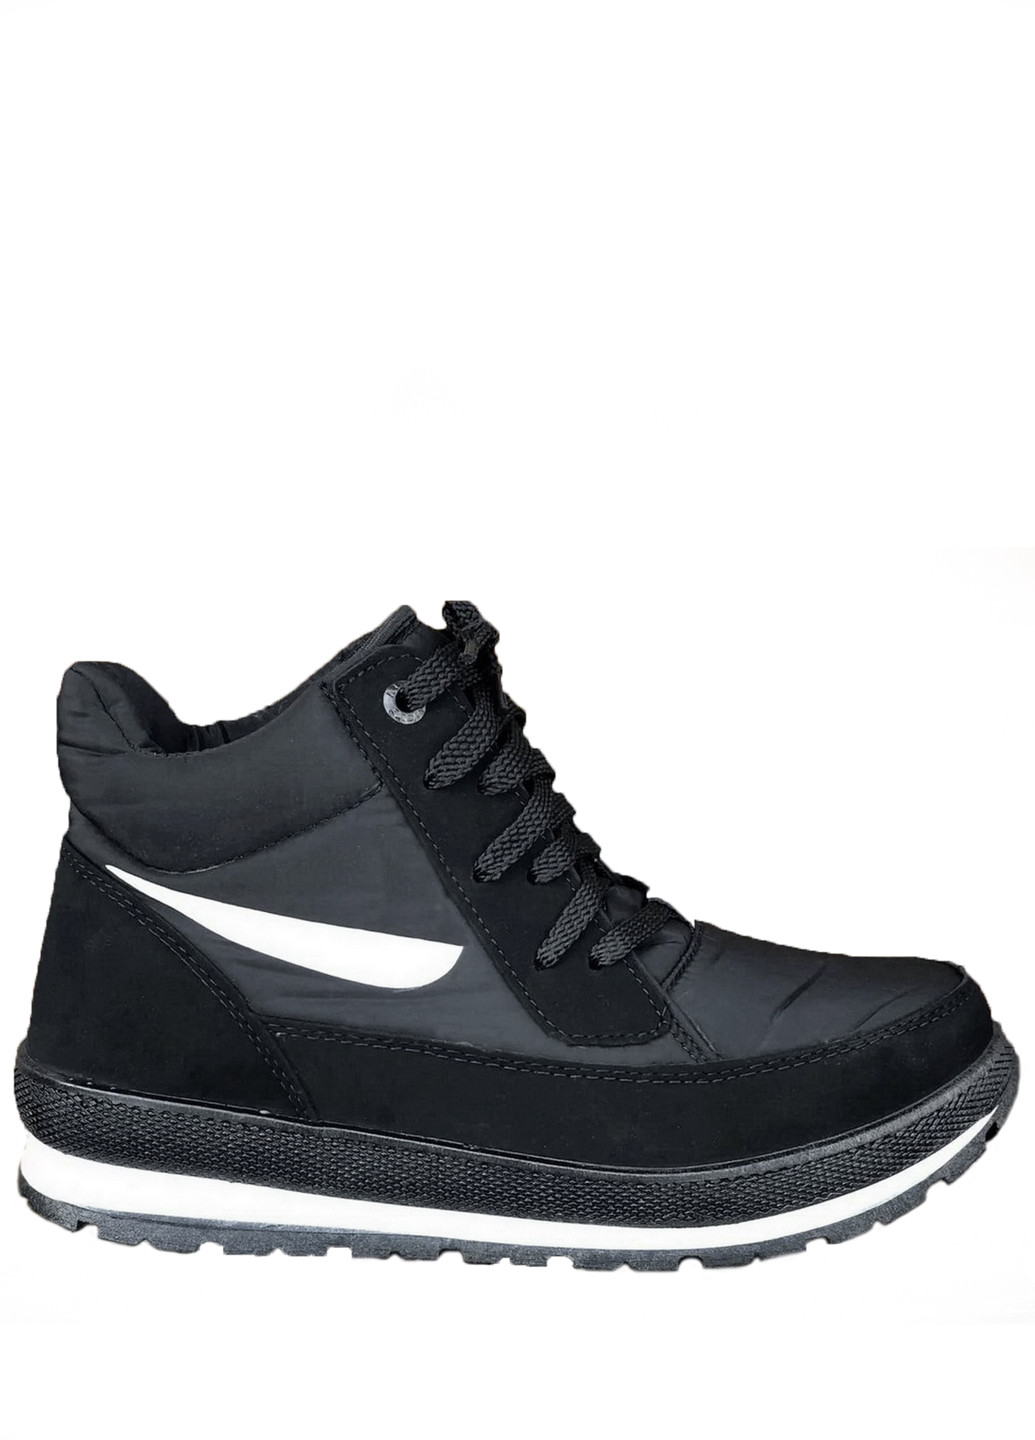 Зимние ботинки женские зимние черные (1283509487) хайкеры Bromen из искусственного нубука, тканевые